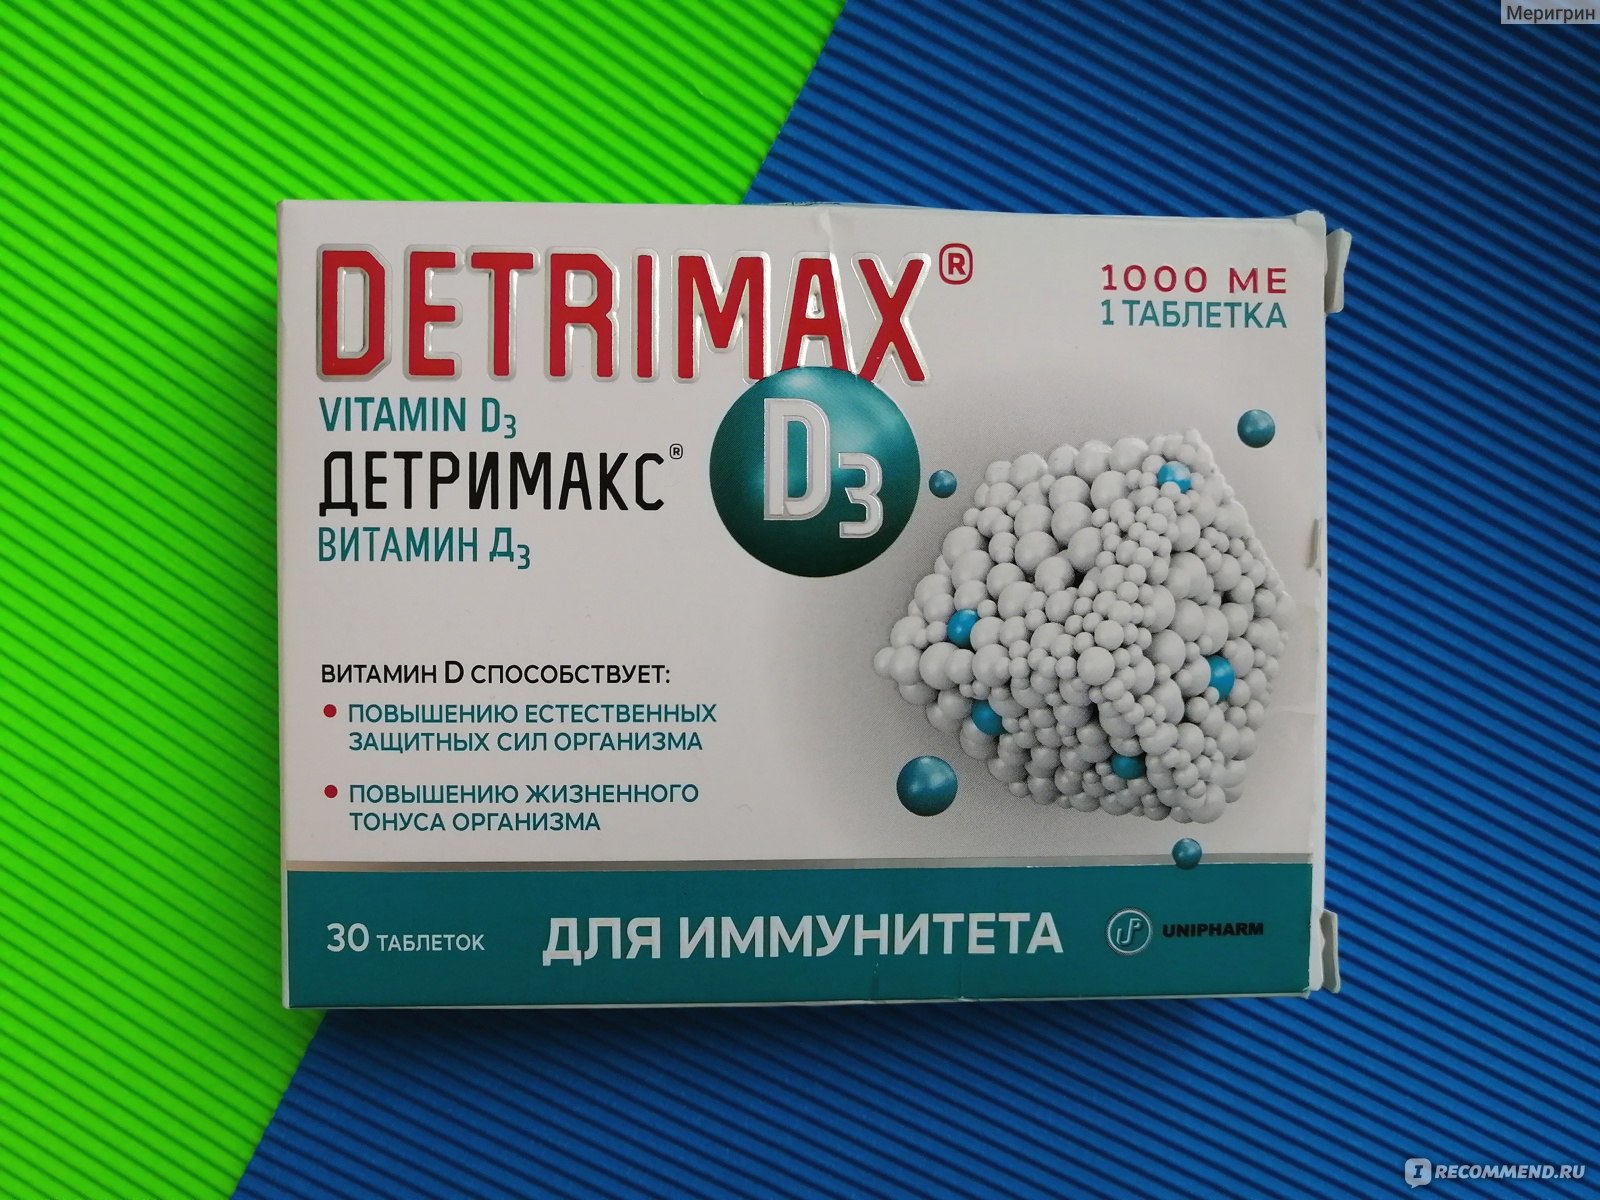 Детримакс тетра таблетки отзывы. Детримакс витамин д3. Детримакс 5000ме.